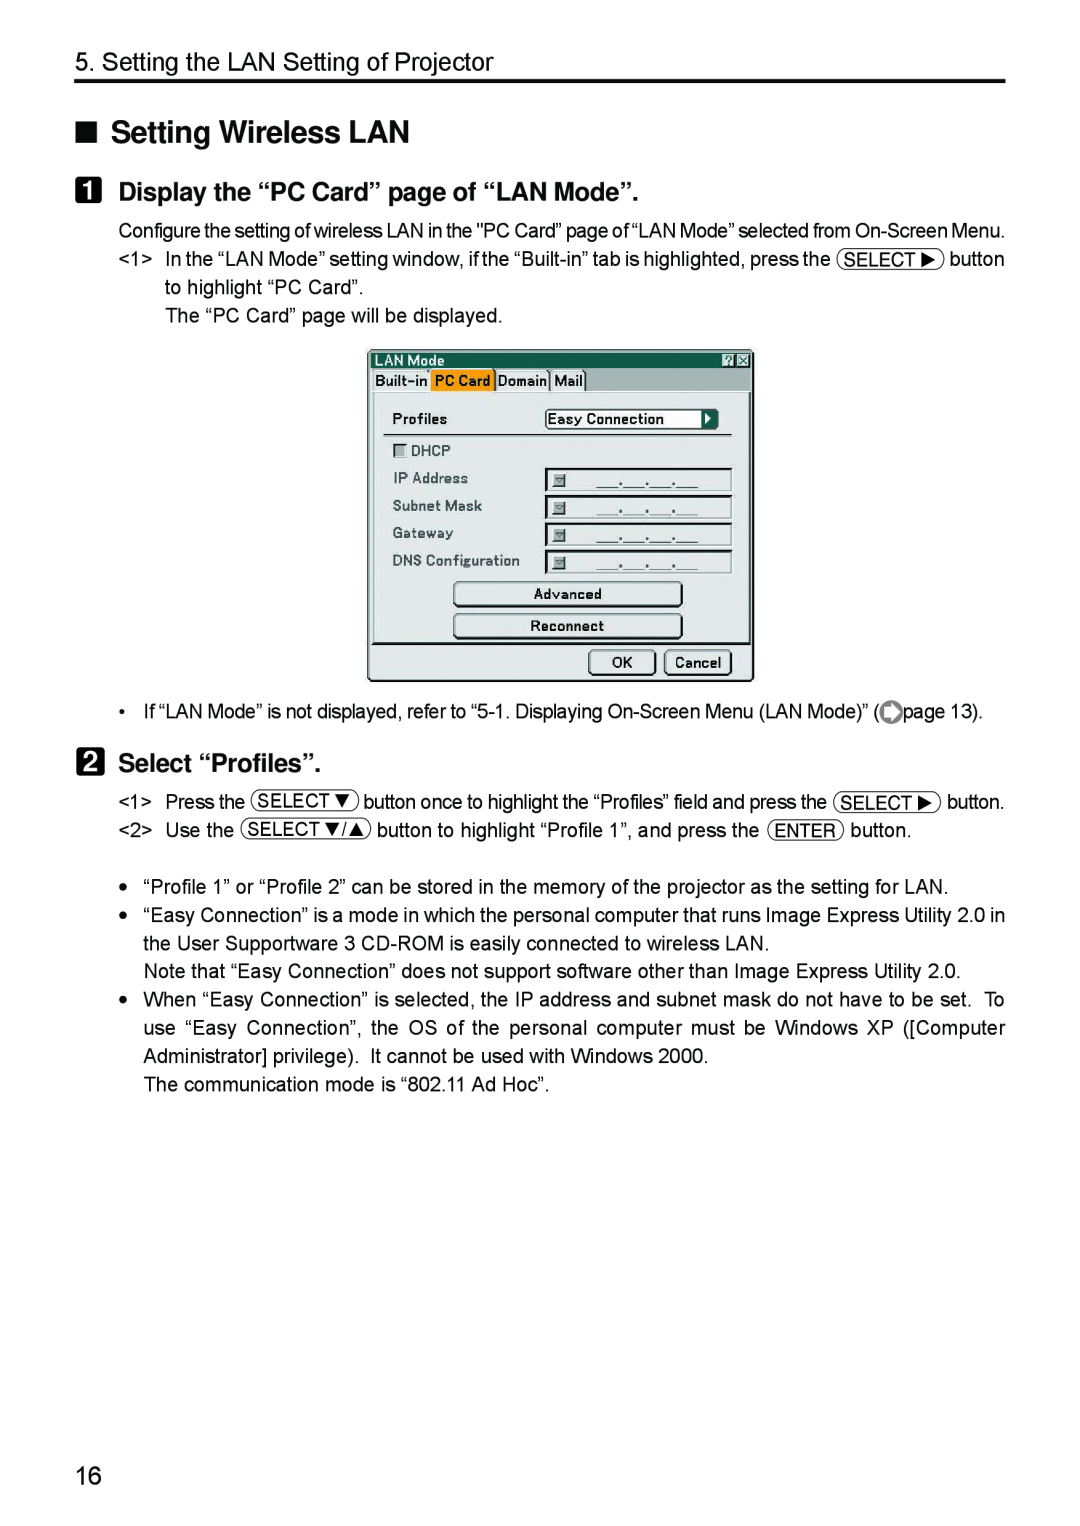 Dukane 8808 user manual Setting Wireless LAN, Display the “PC Card” page of “LAN Mode”, Select “Profiles” 